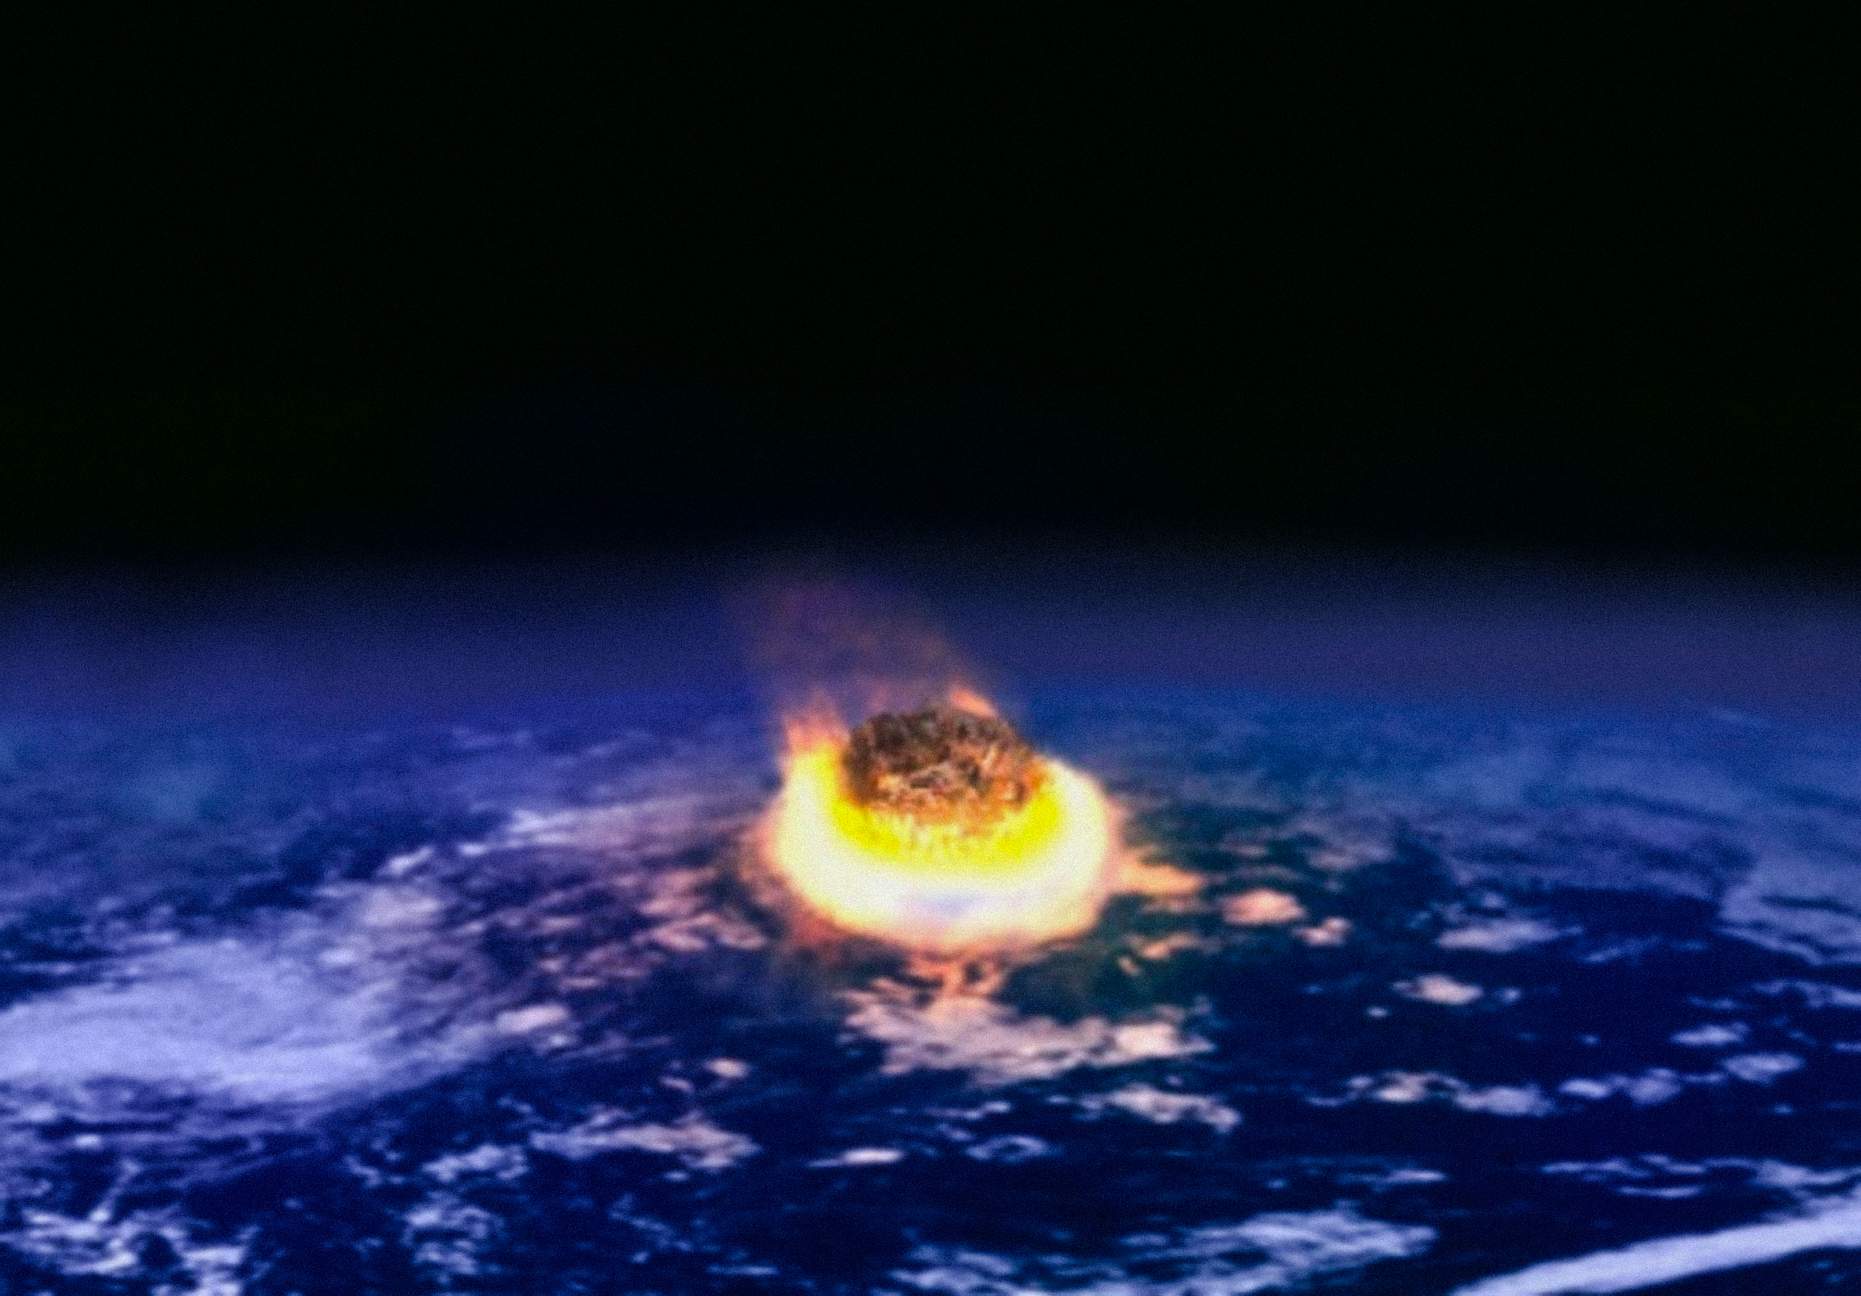 Bagi Zoltan Galántai, skala yang mengklasifikasikan peradaban harus didasarkan pada kemampuan mereka untuk bertahan dari bencana, khususnya yang berasal dari kosmik, seperti dampak asteroid.